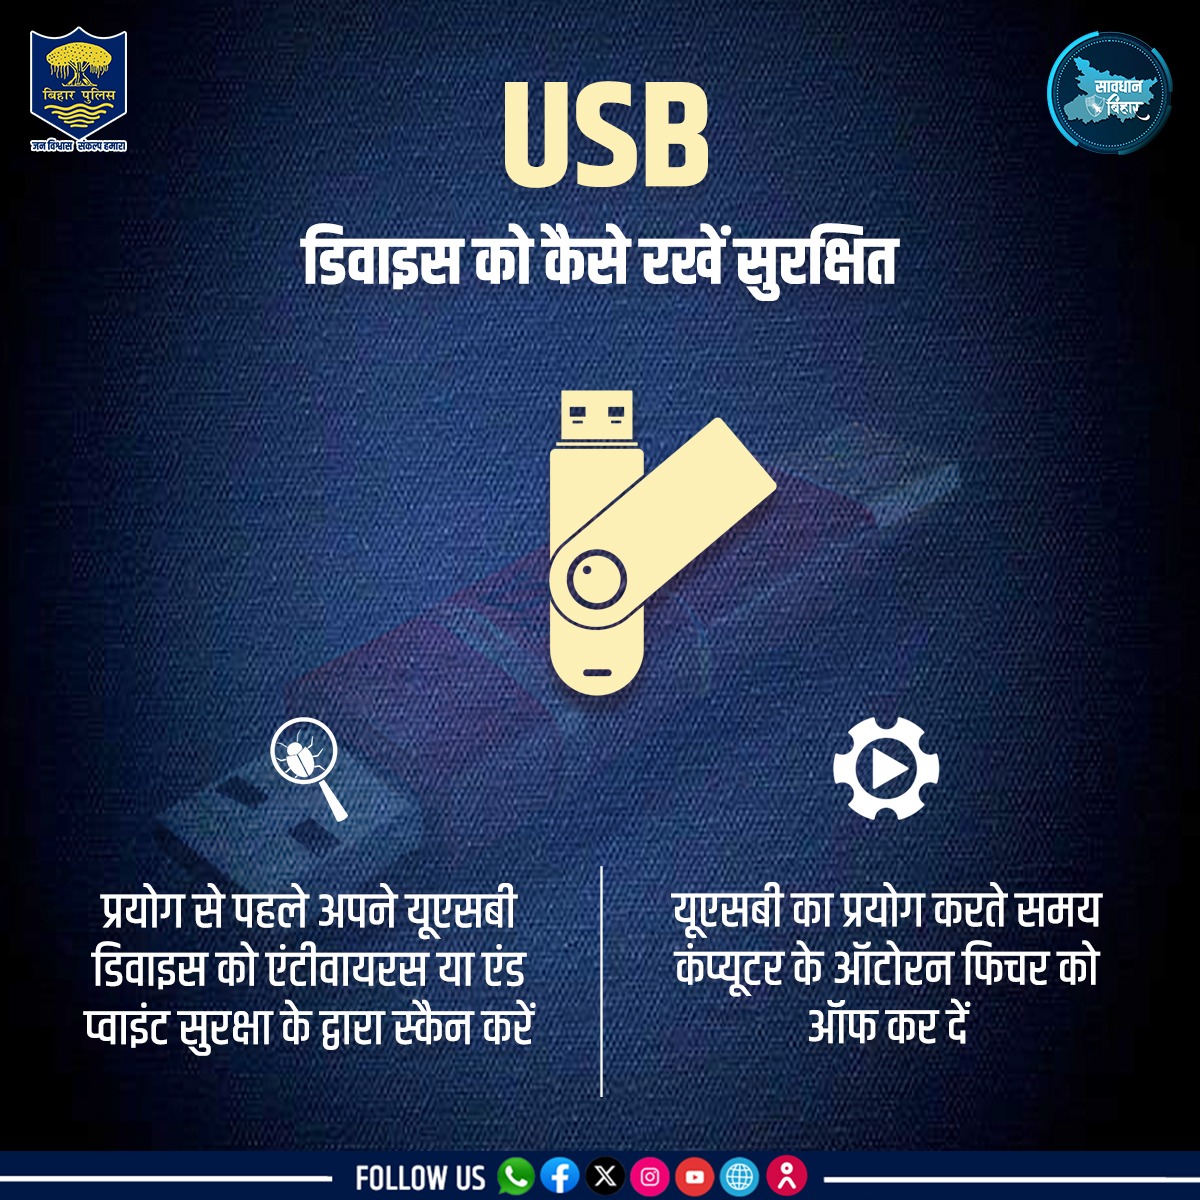 जानें,आप कैसे रख सकते हैं अपने USB डिवाइस को सुरक्षित... . . #BiharPolice #cybersecurity #cyberawareness #Bihar